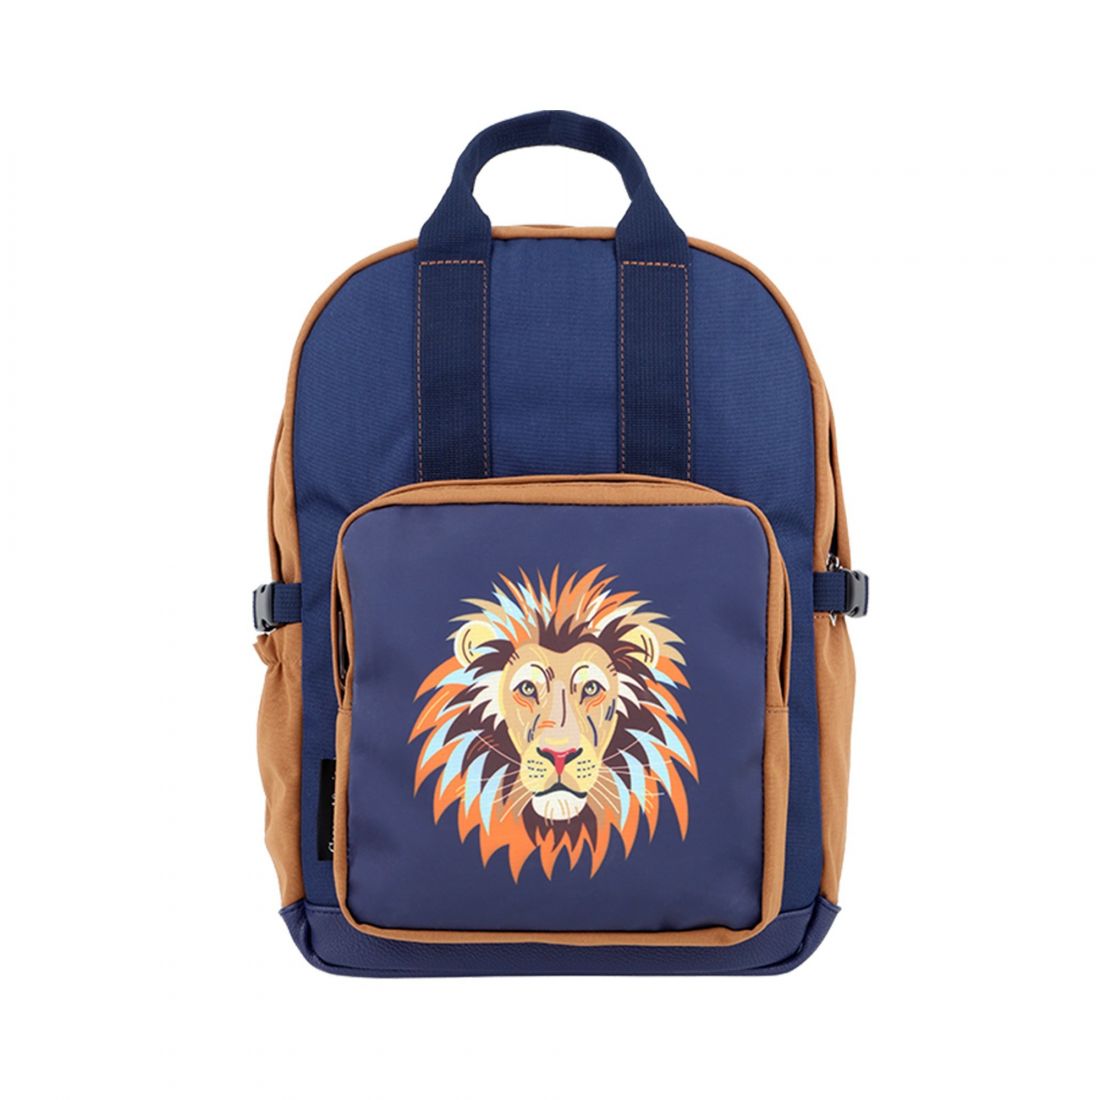 Caramel Backpack Medium Simba